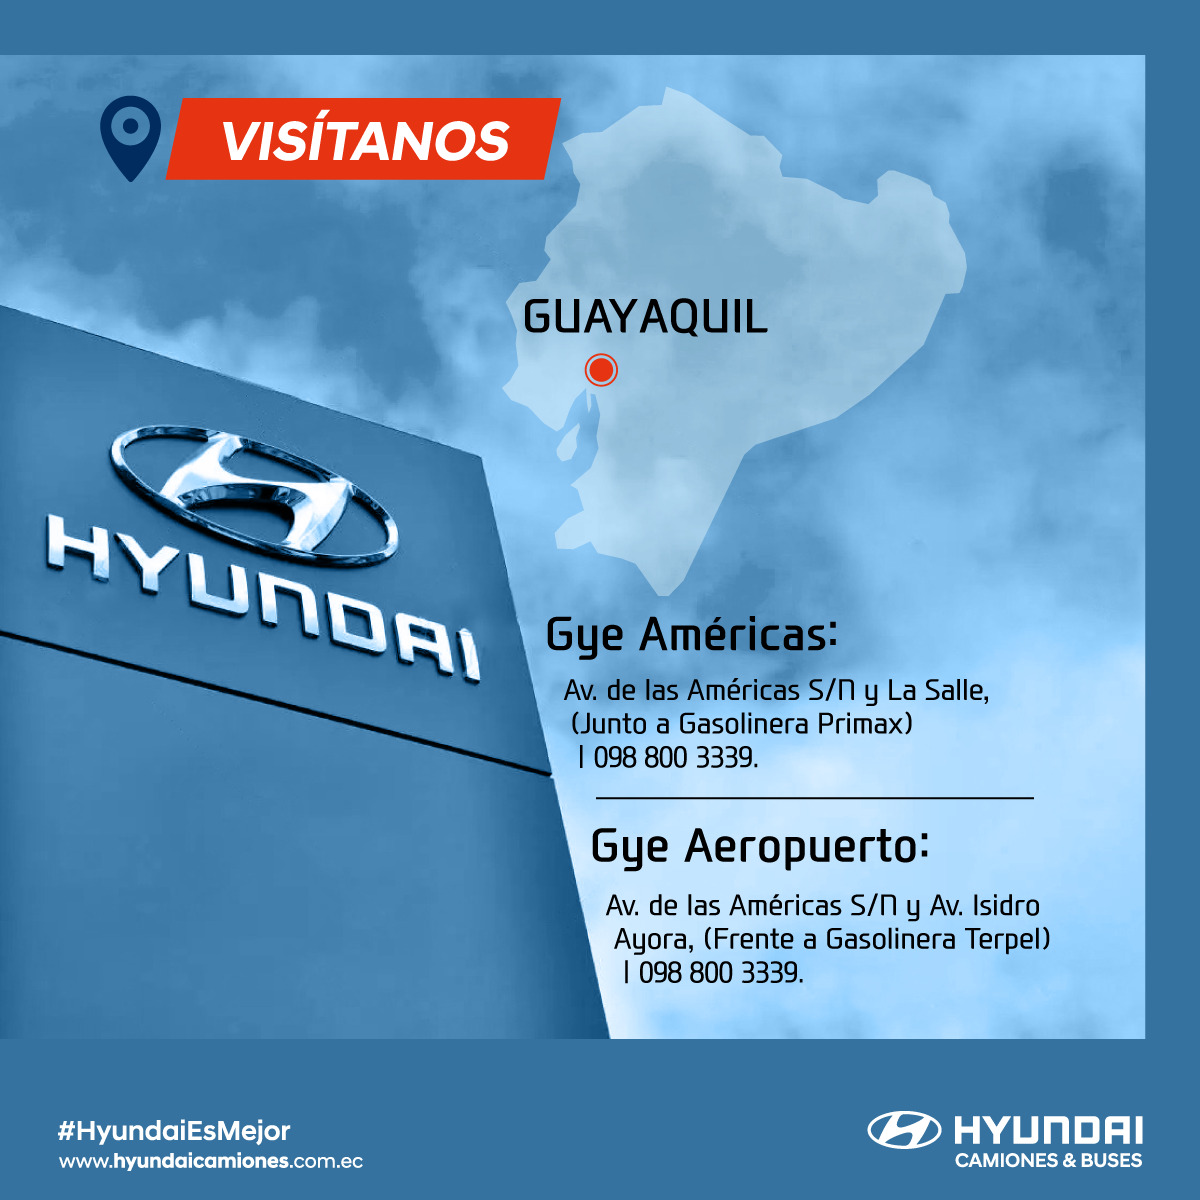 Visitanos Hyundai Camiones y Buses Ecuador - Guayaquil